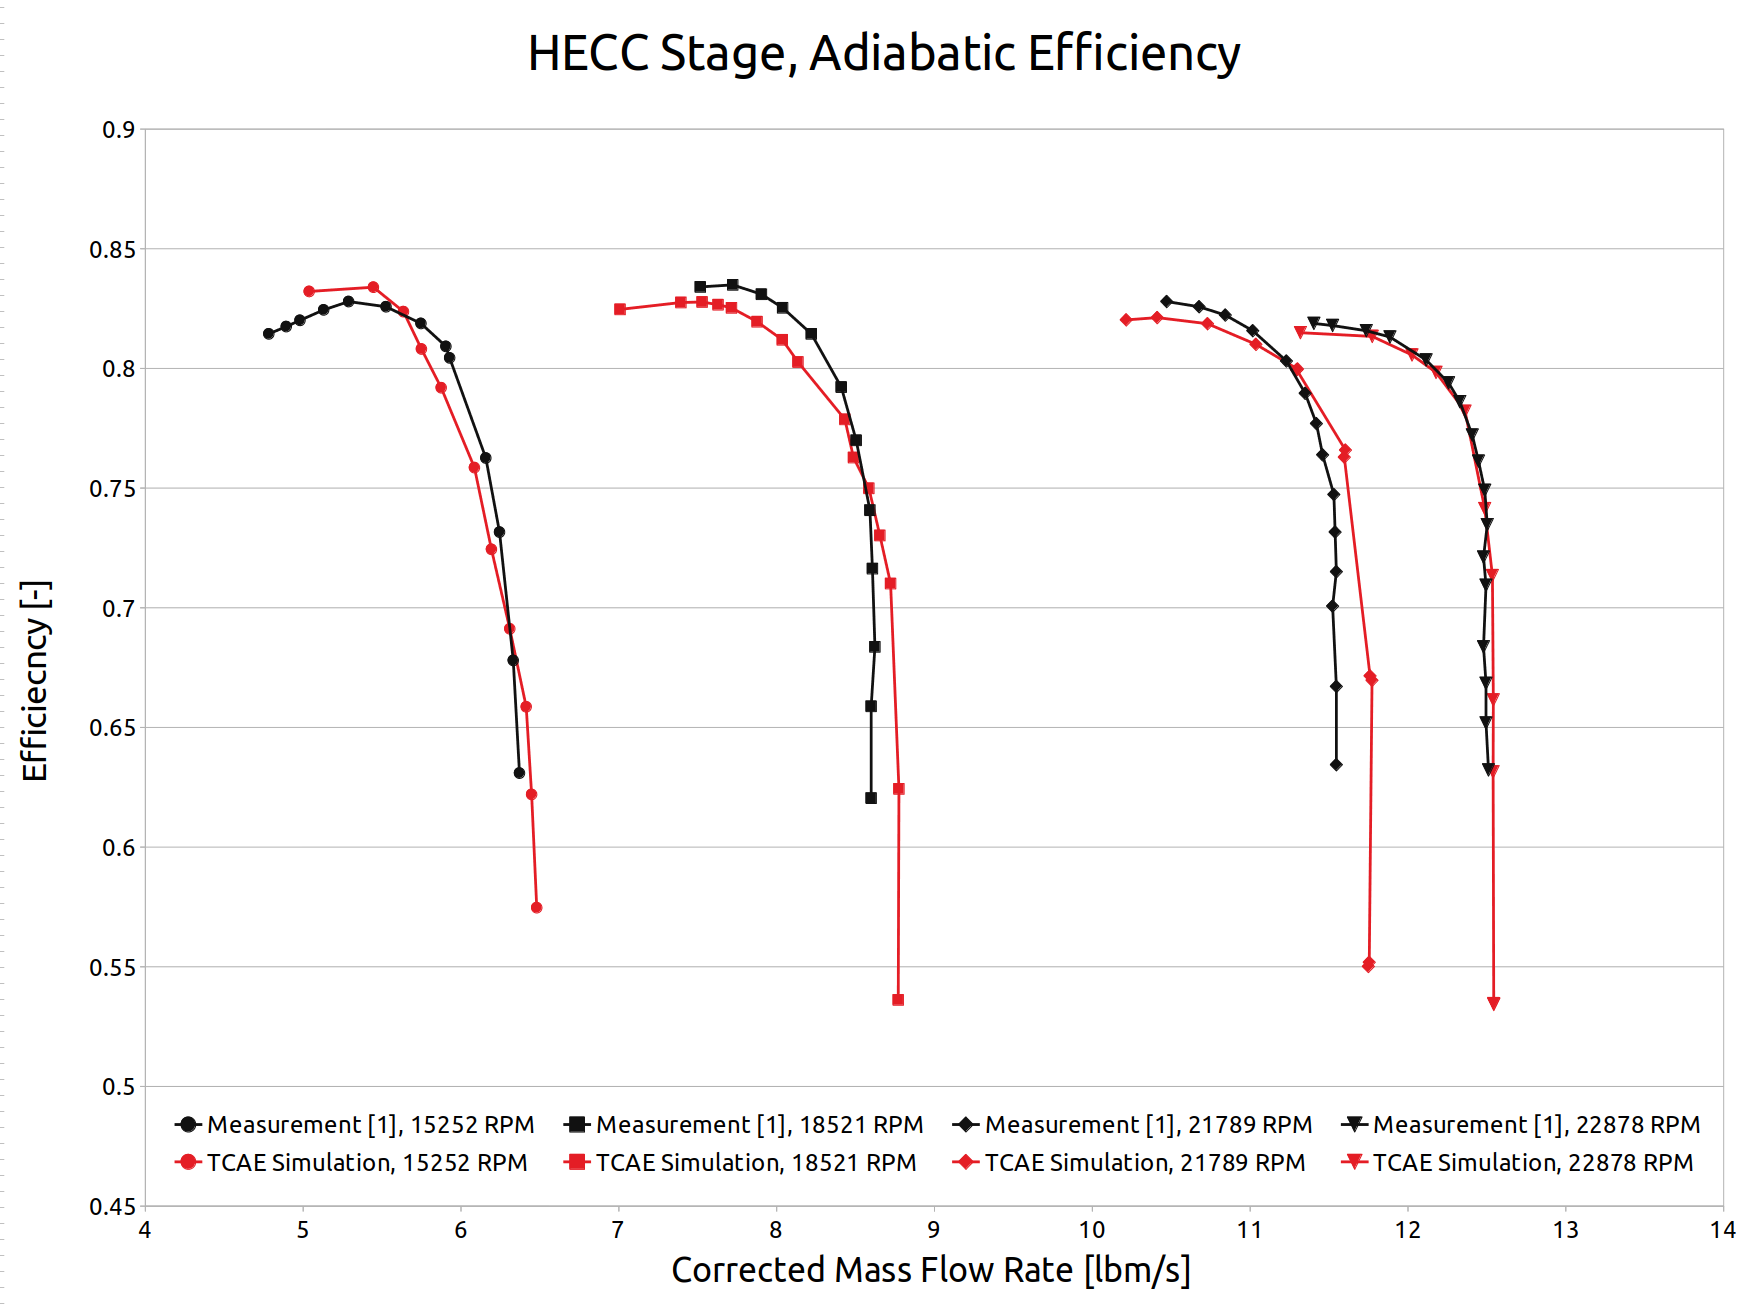 HECC Stage Adiabatic Efficiency Comparison